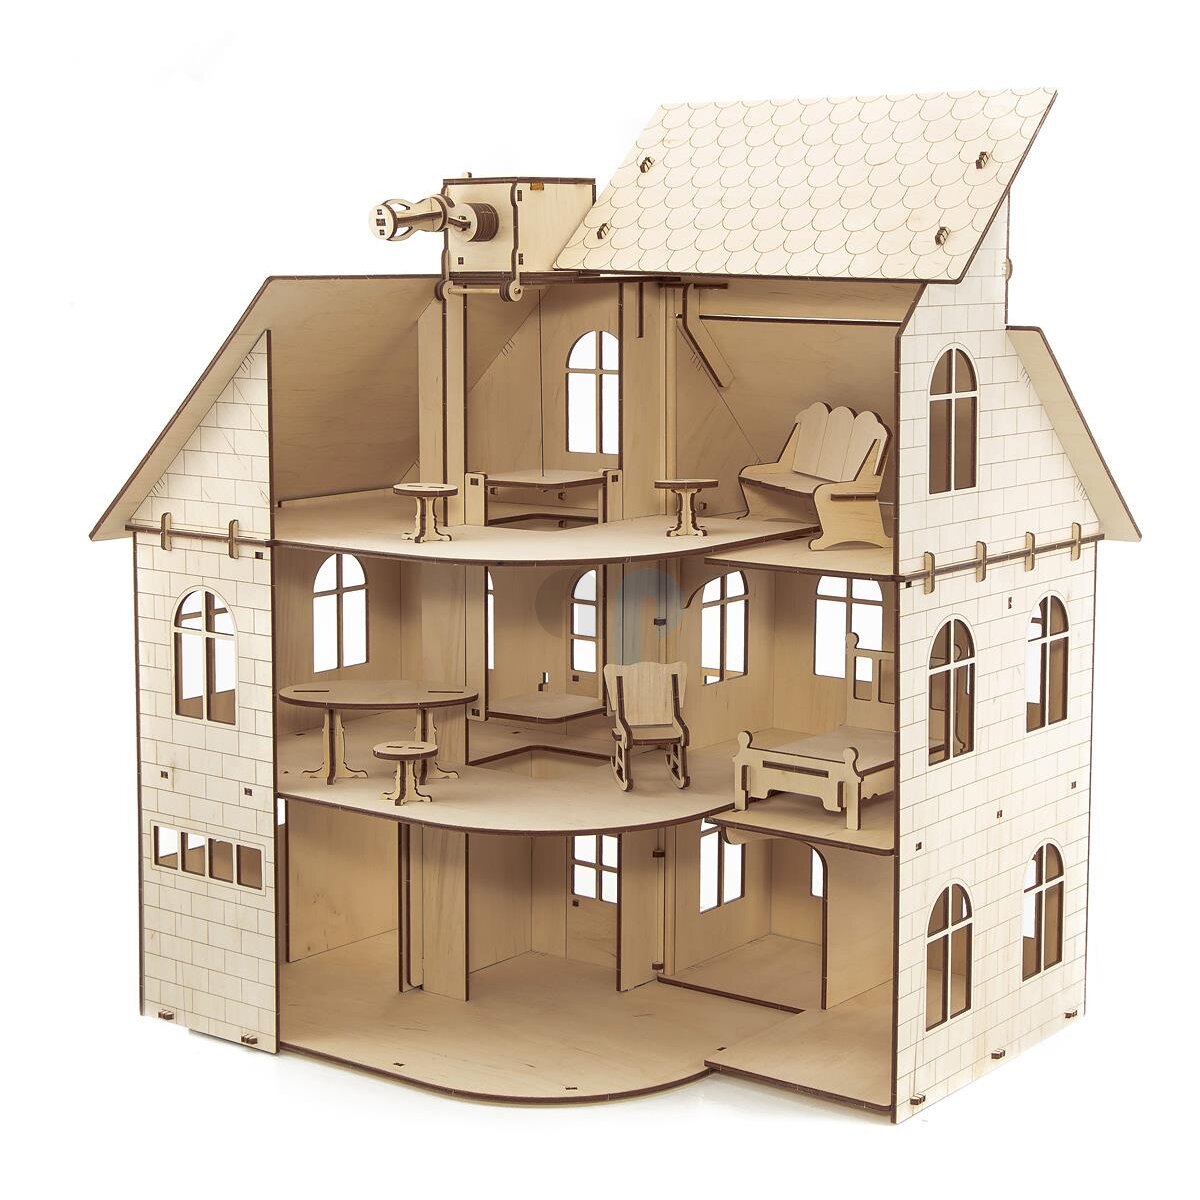 Zerodis 3D Puzzle DIY Casa Bambole Legno Dice Station personalità Montare Photo Frame Puzzle Bambini Giocattolo Modello Educazione Precoce Giocattoli Cognitivi Decorazione per Oltre 3 Anni o Adulti